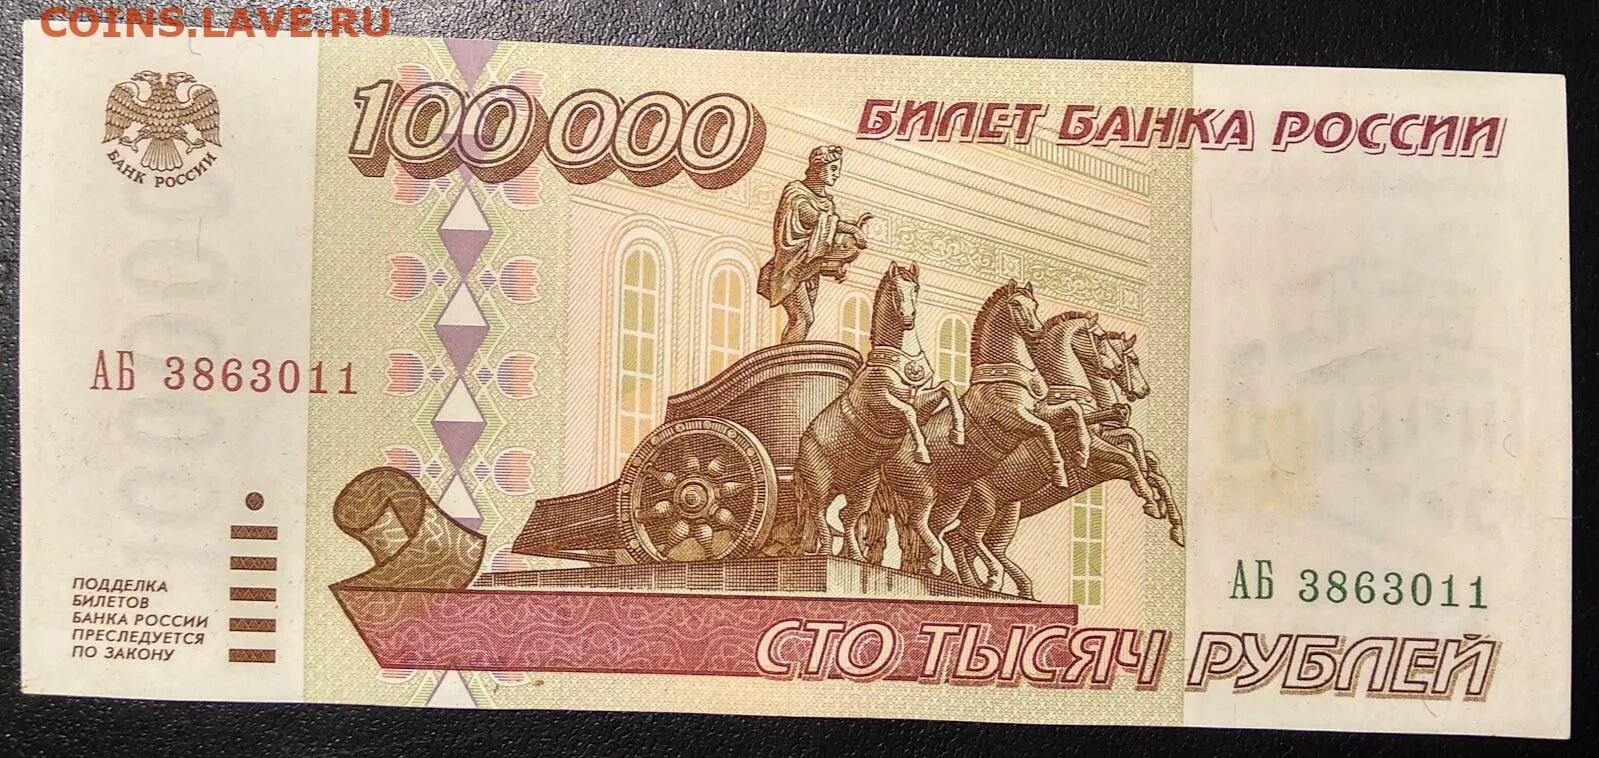 Купюра 100 тысяч рублей 1995 года. Купюра 100000 рублей 1995. СТО рублей. Банкнота 100 рублей.